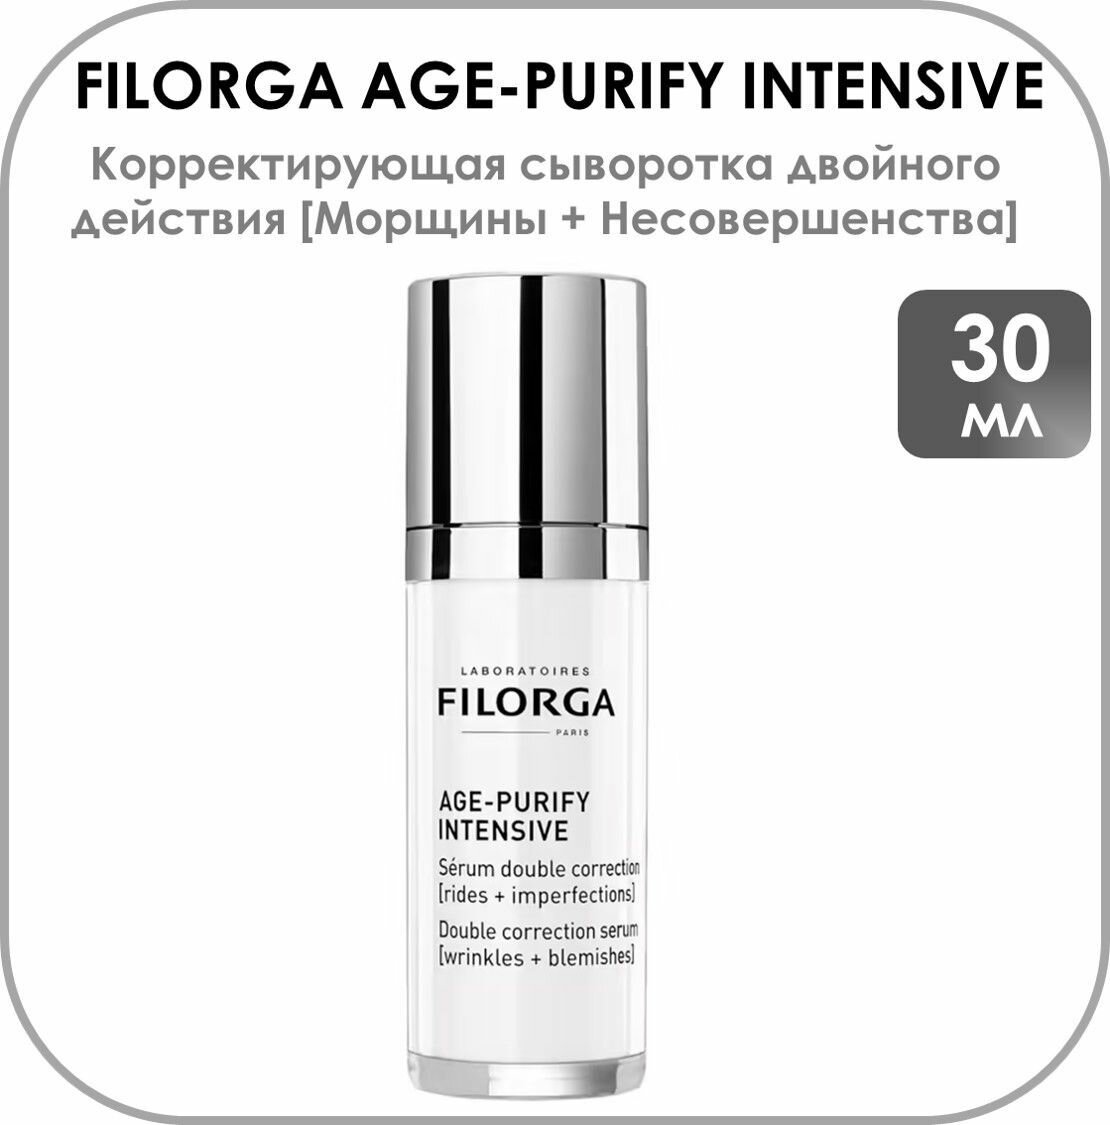 Filorga AGE-PURIFY INTENSIVE Морщины + несовершенства Корректирующая сыворотка двойного действия 30 мл.